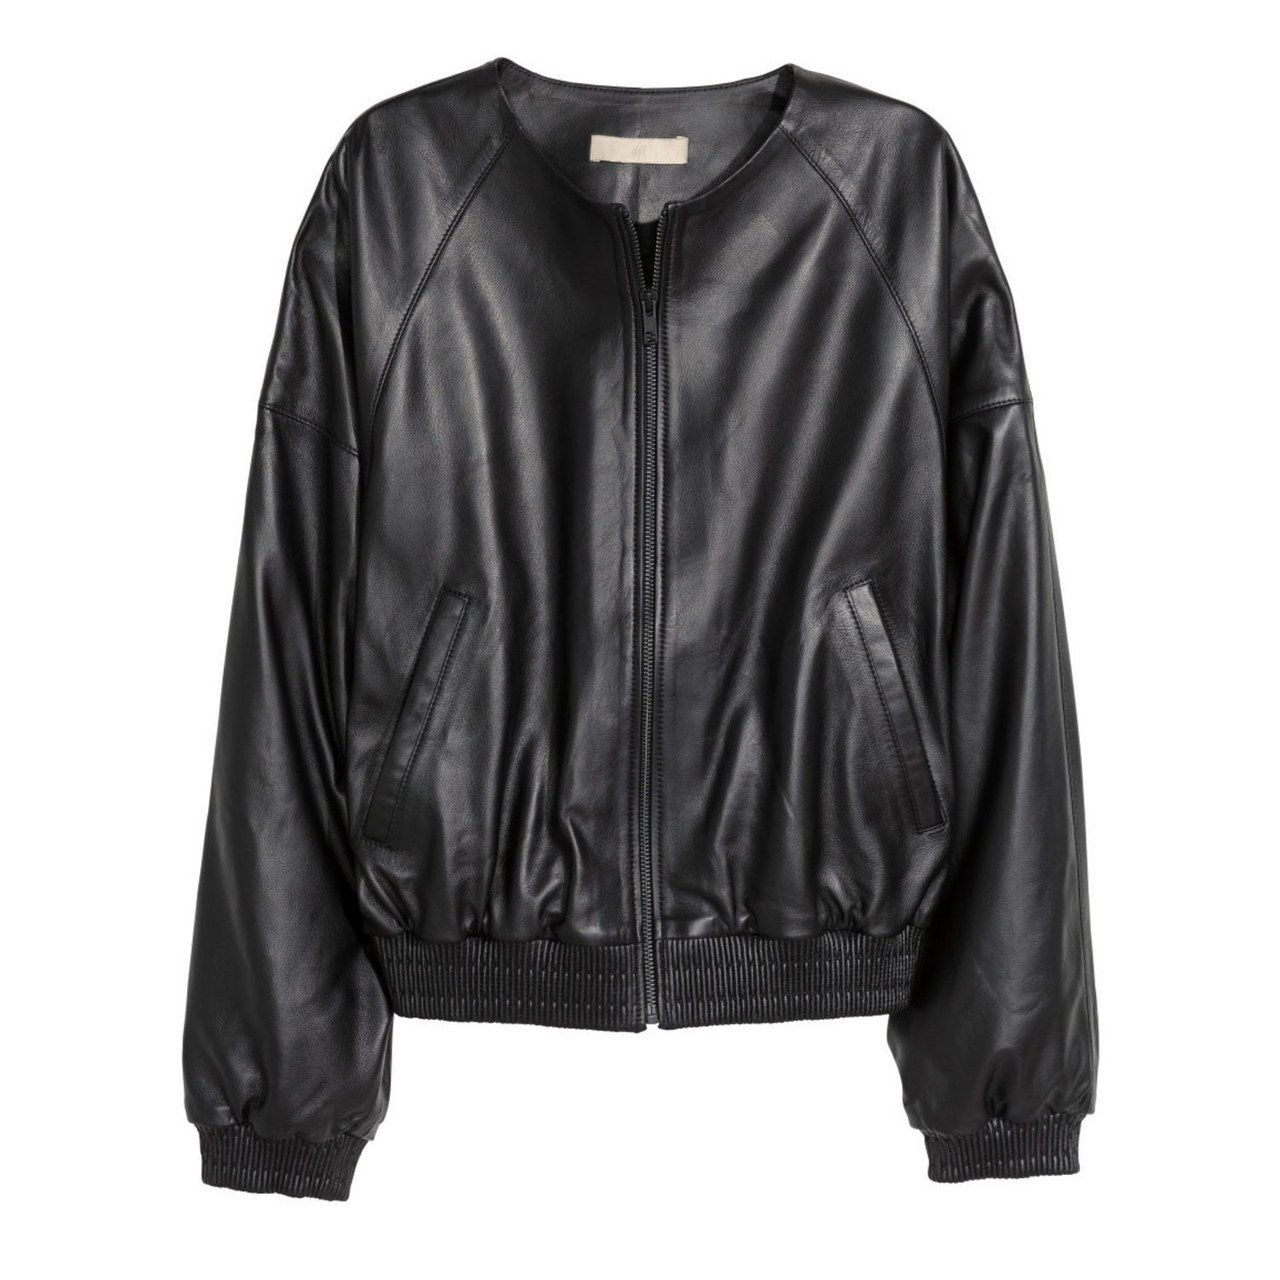 jaro leather jacket hm